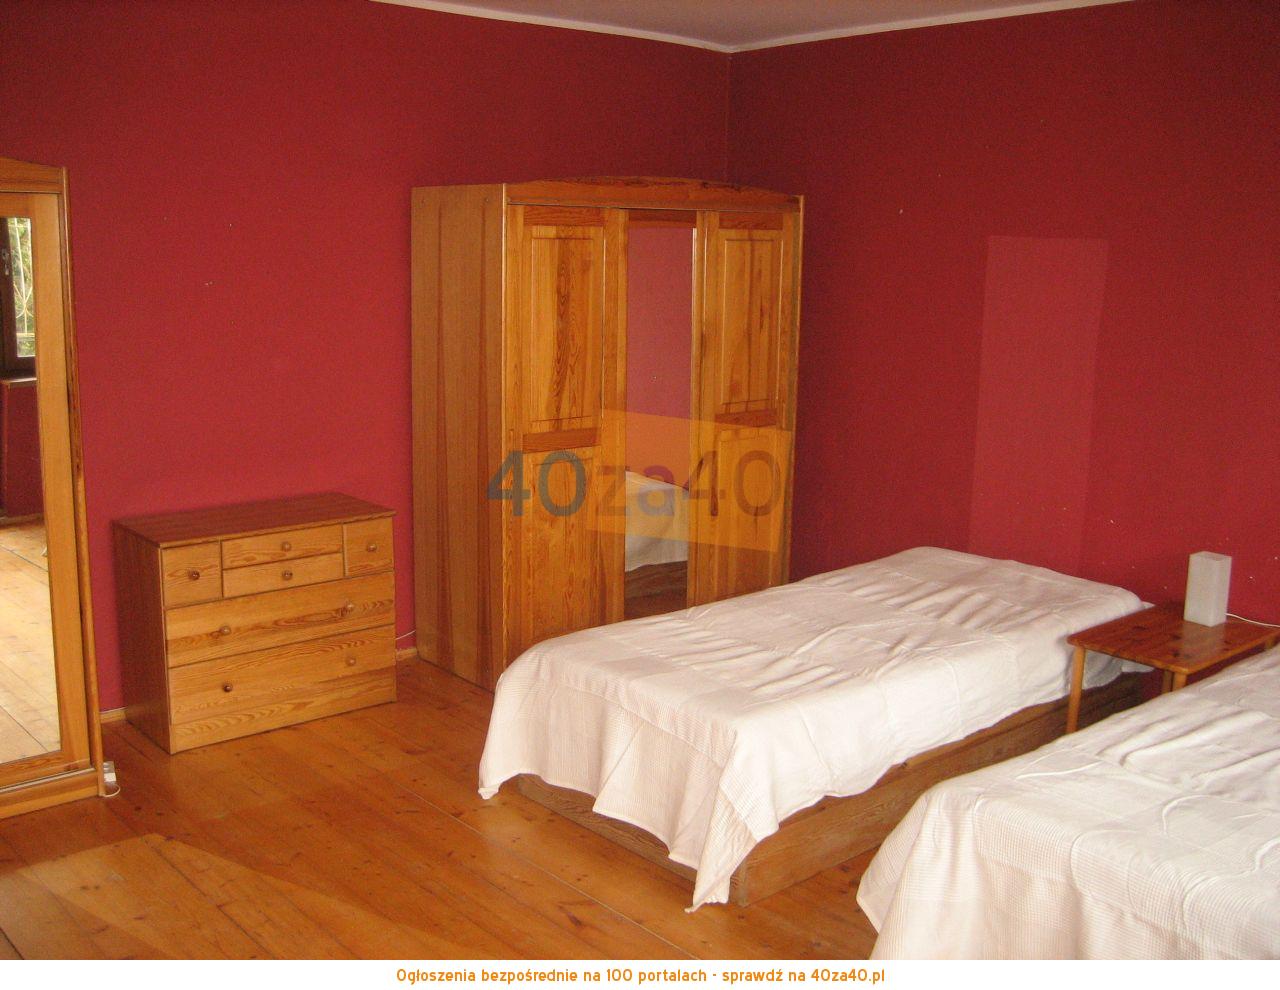 Mieszkanie do wynajęcia, pokoje: 3, cena: 150,00 PLN, Gdańsk, kontakt: 607 628 410